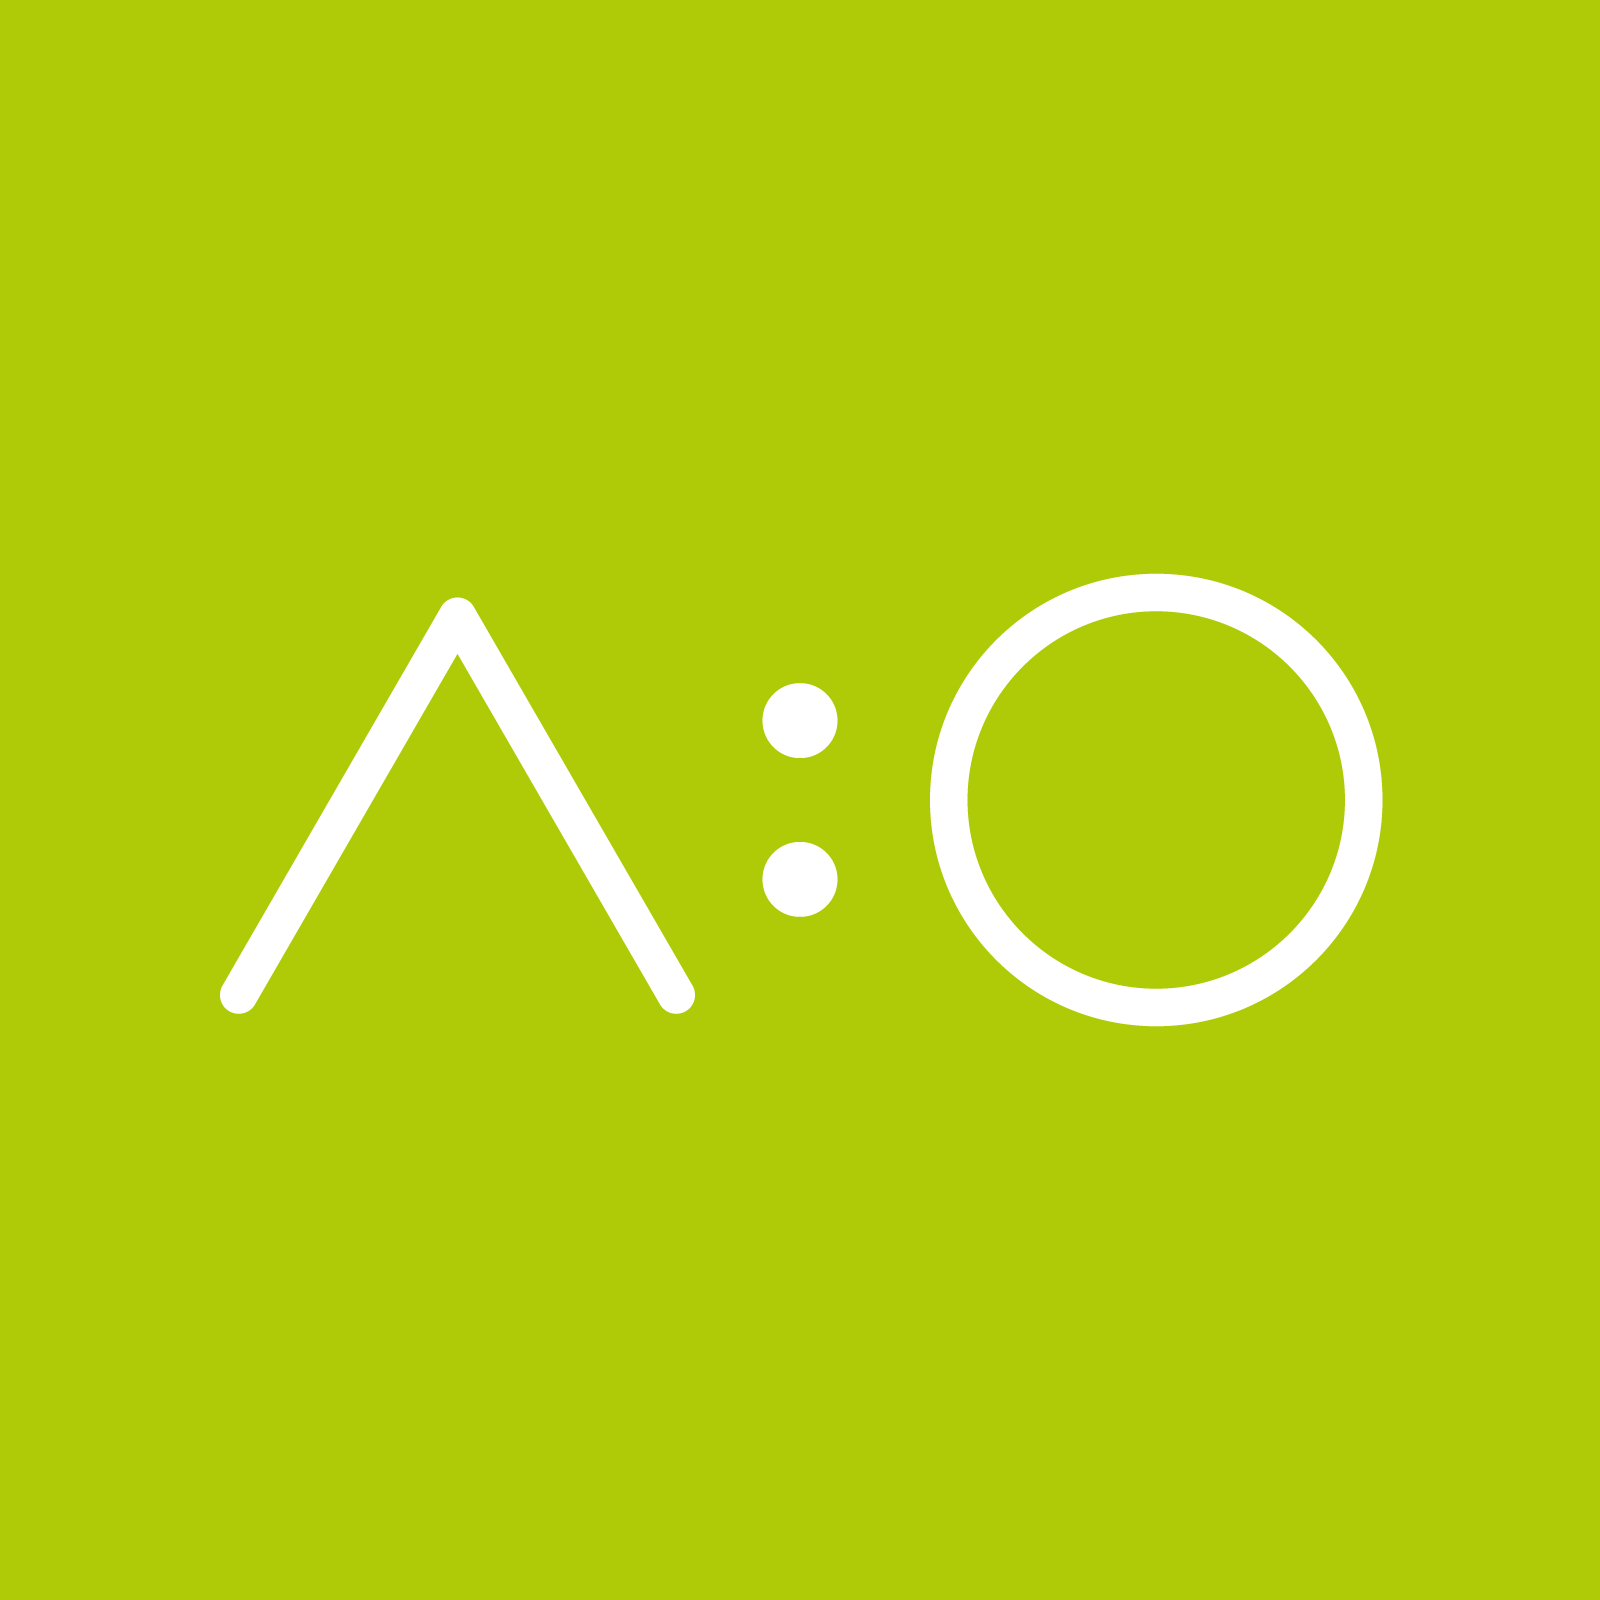 white text a:o on green backbround; acolono GmbH logo